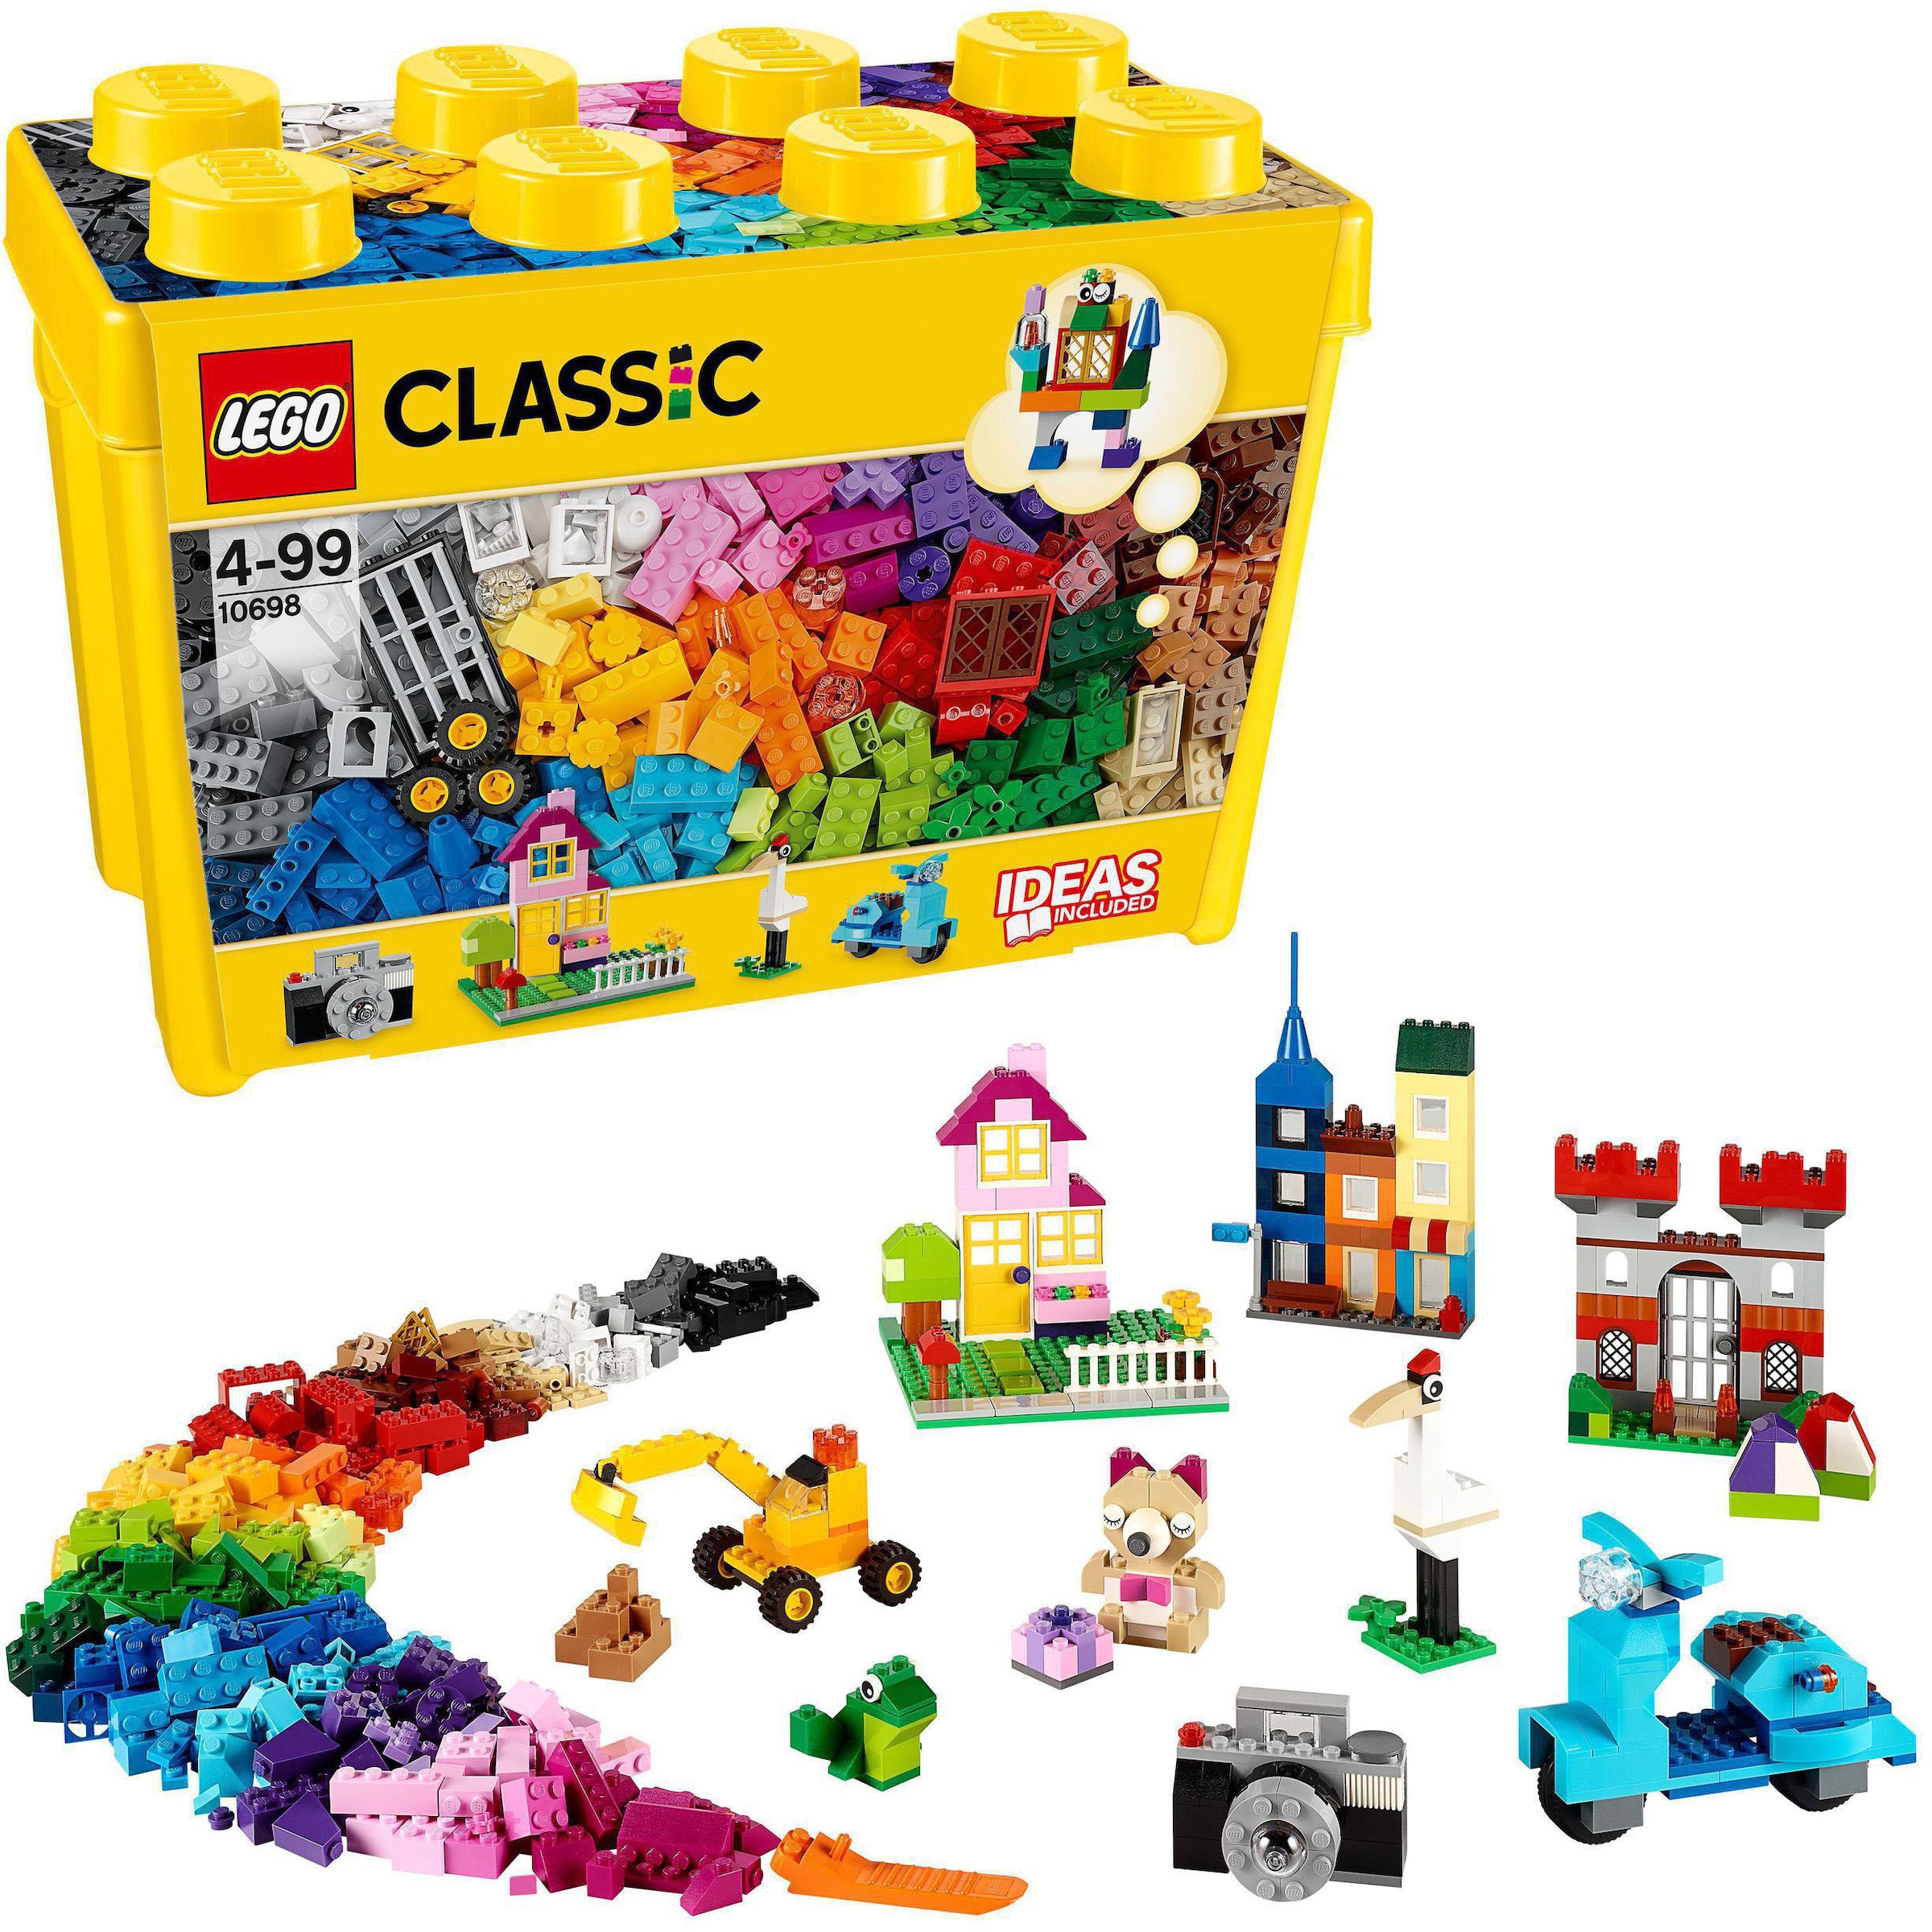 Konstruktionsspielsteine »Große Steine-Box (10698), LEGO® Classic«, (790 St.), Made in...